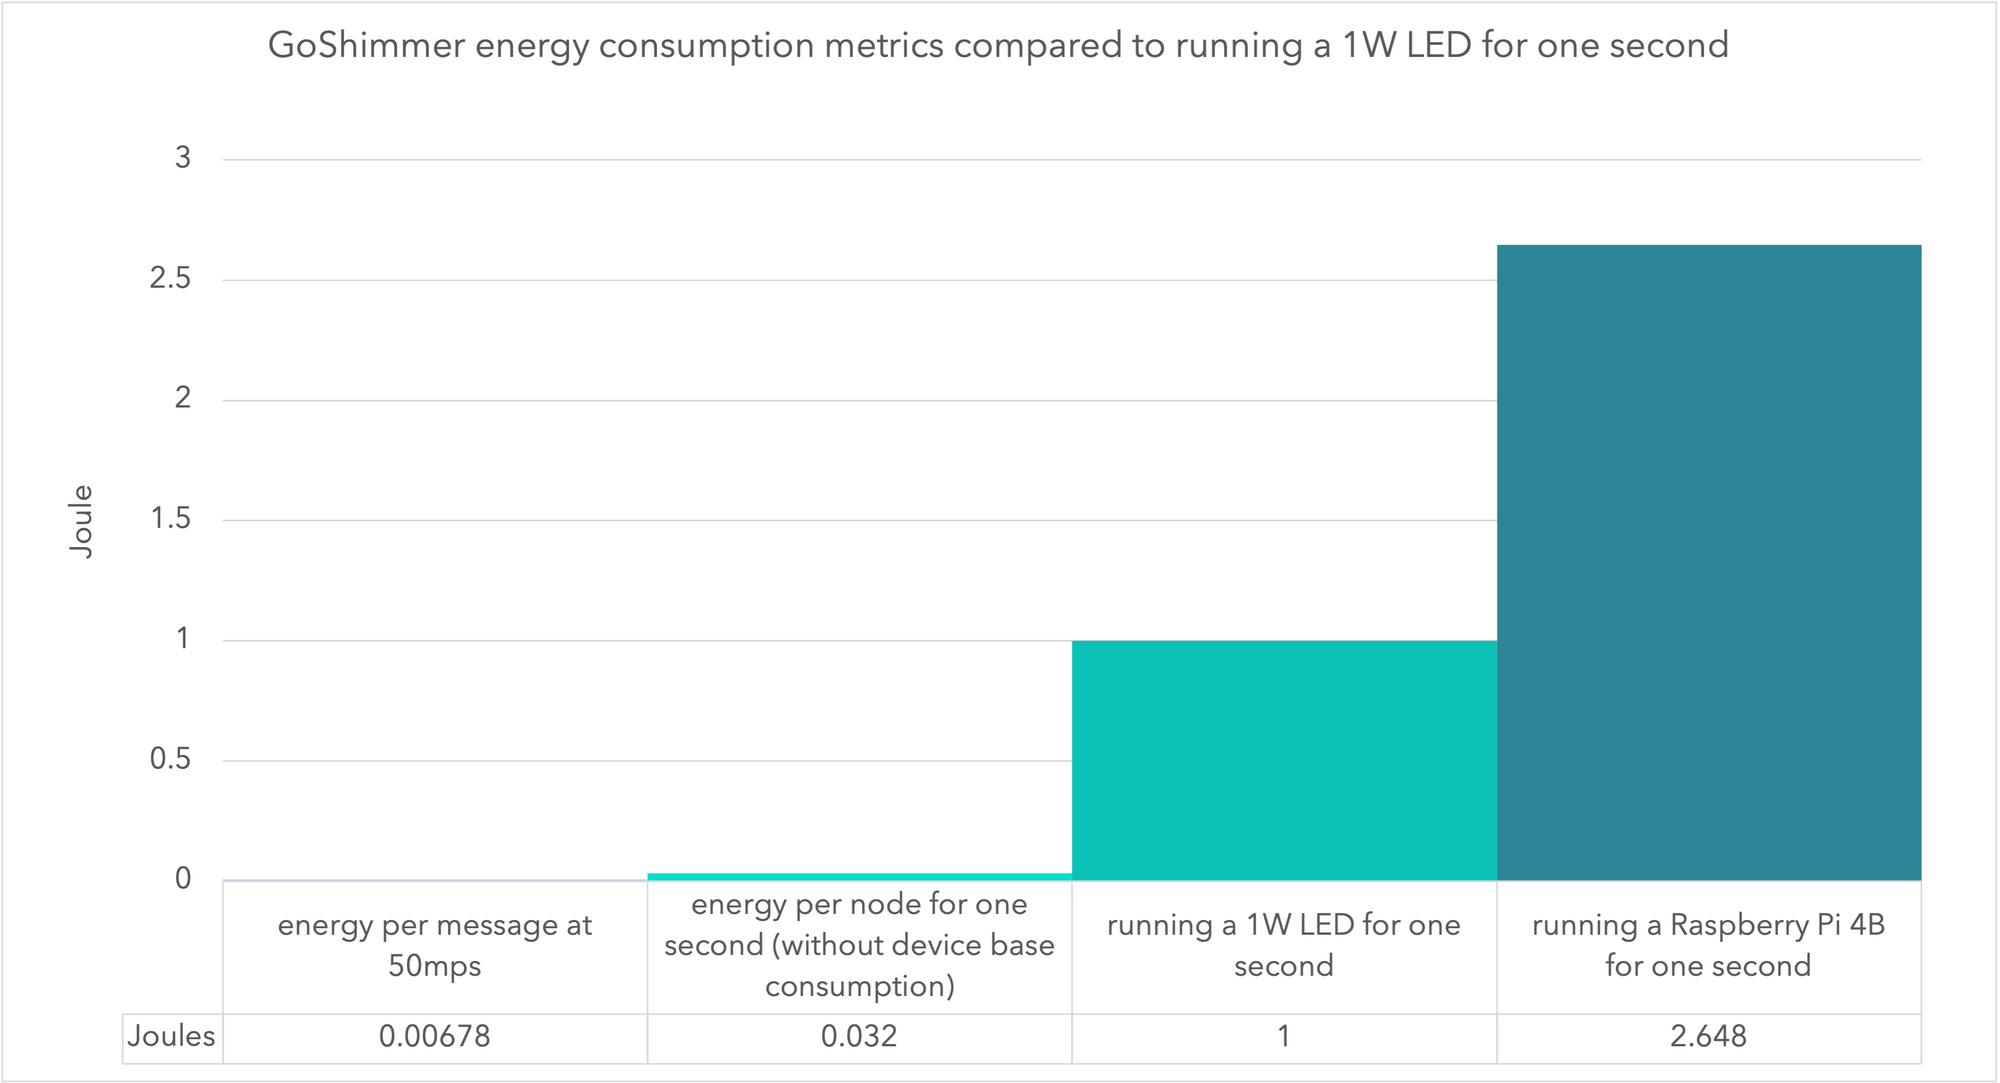 Figure 2 - GoShimmer energy consumption metrics comparison